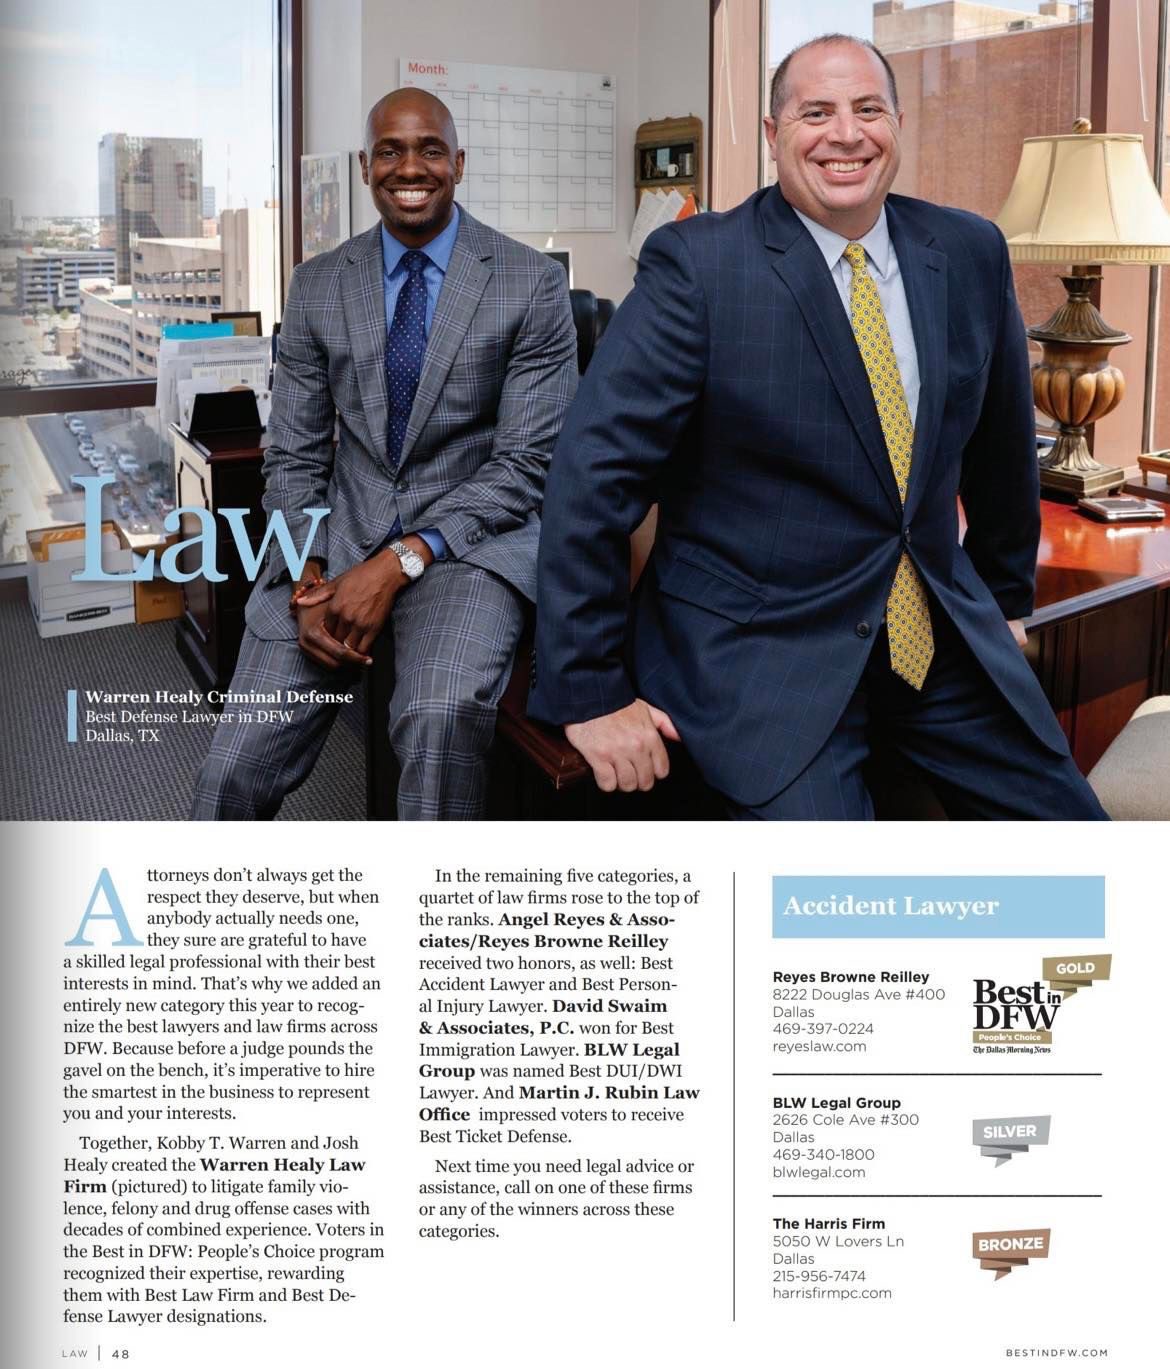 Best lawyers in Dallas Warren Healy